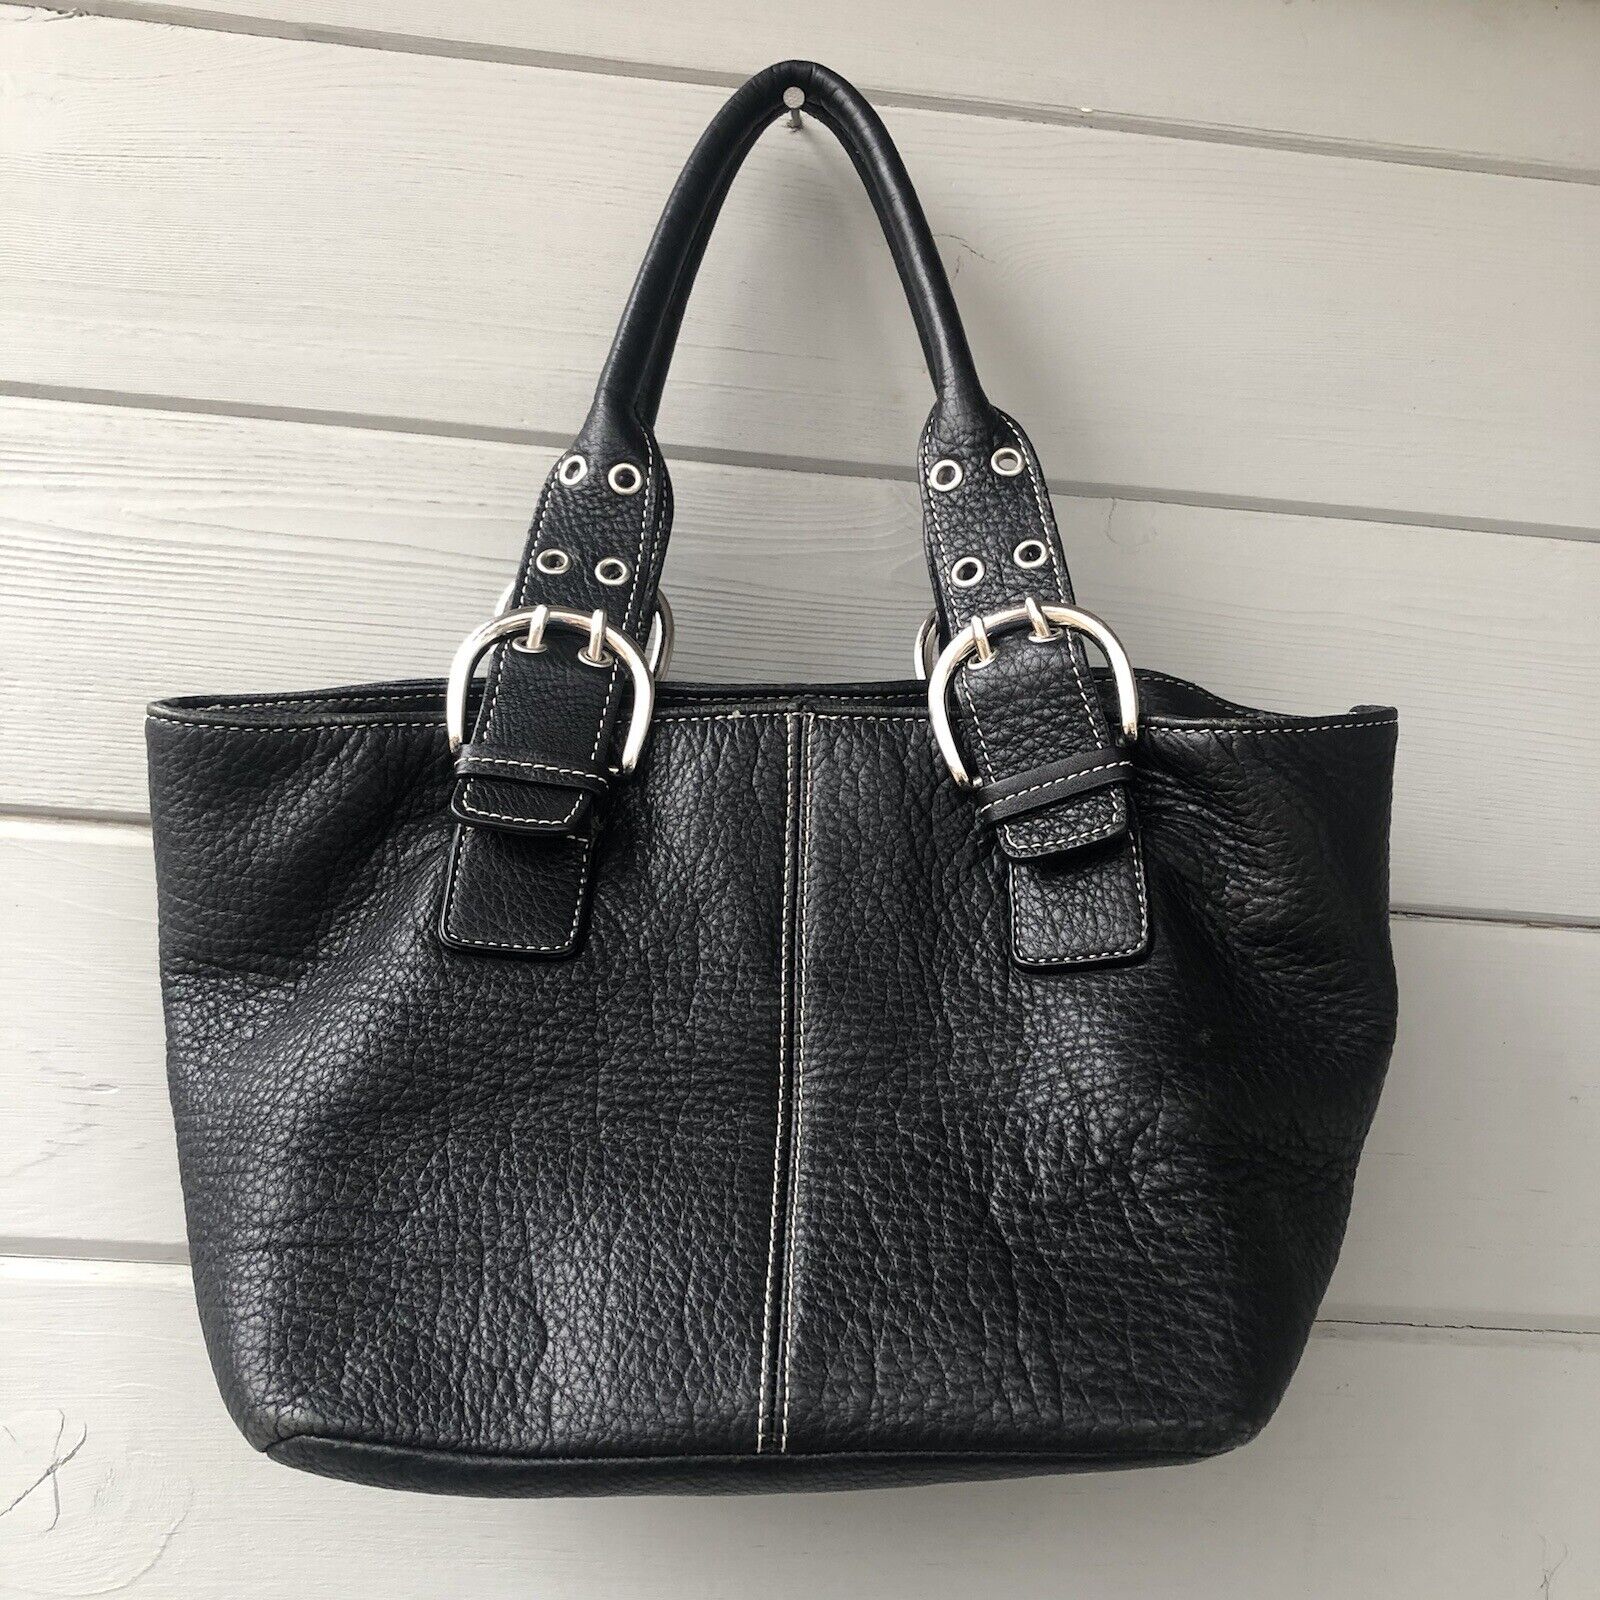 Tignanello leather black silver small handbag - image 1